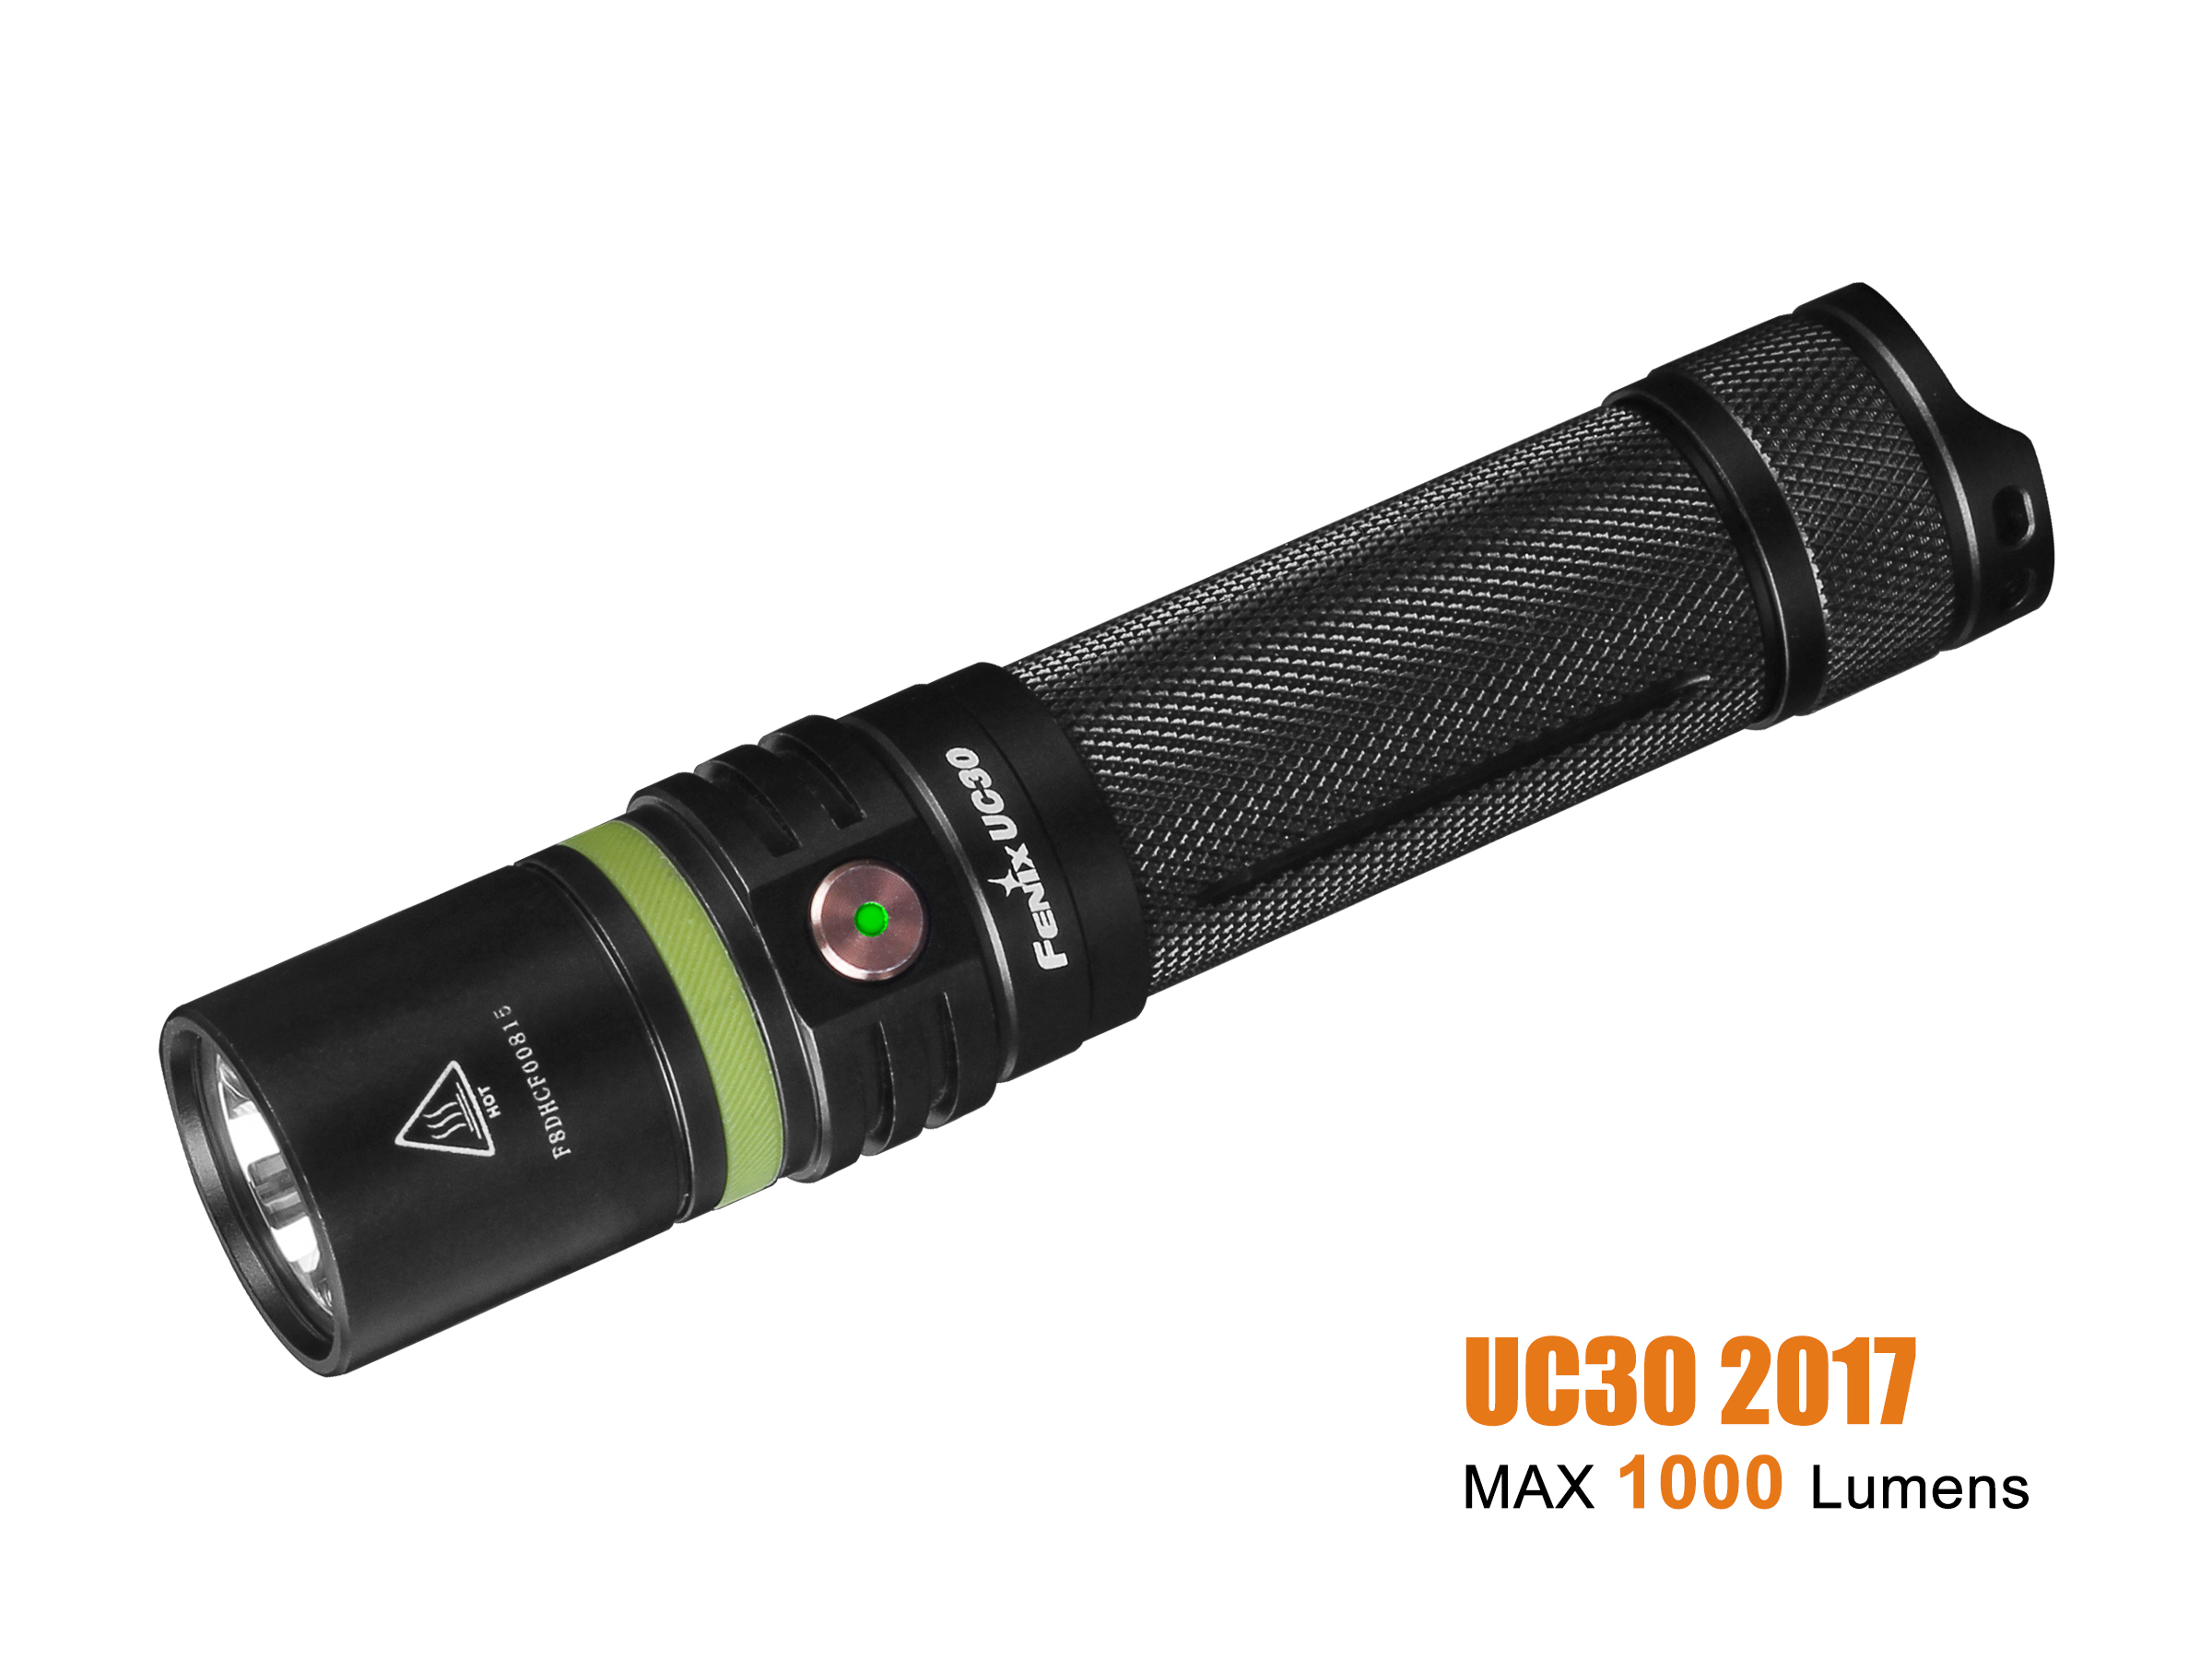 Produktbild von Fenix UC30 2017 wiederaufladbare LED Taschenlampe, 1000 Lumen, Cree XP-L HI V3, ohne Akku